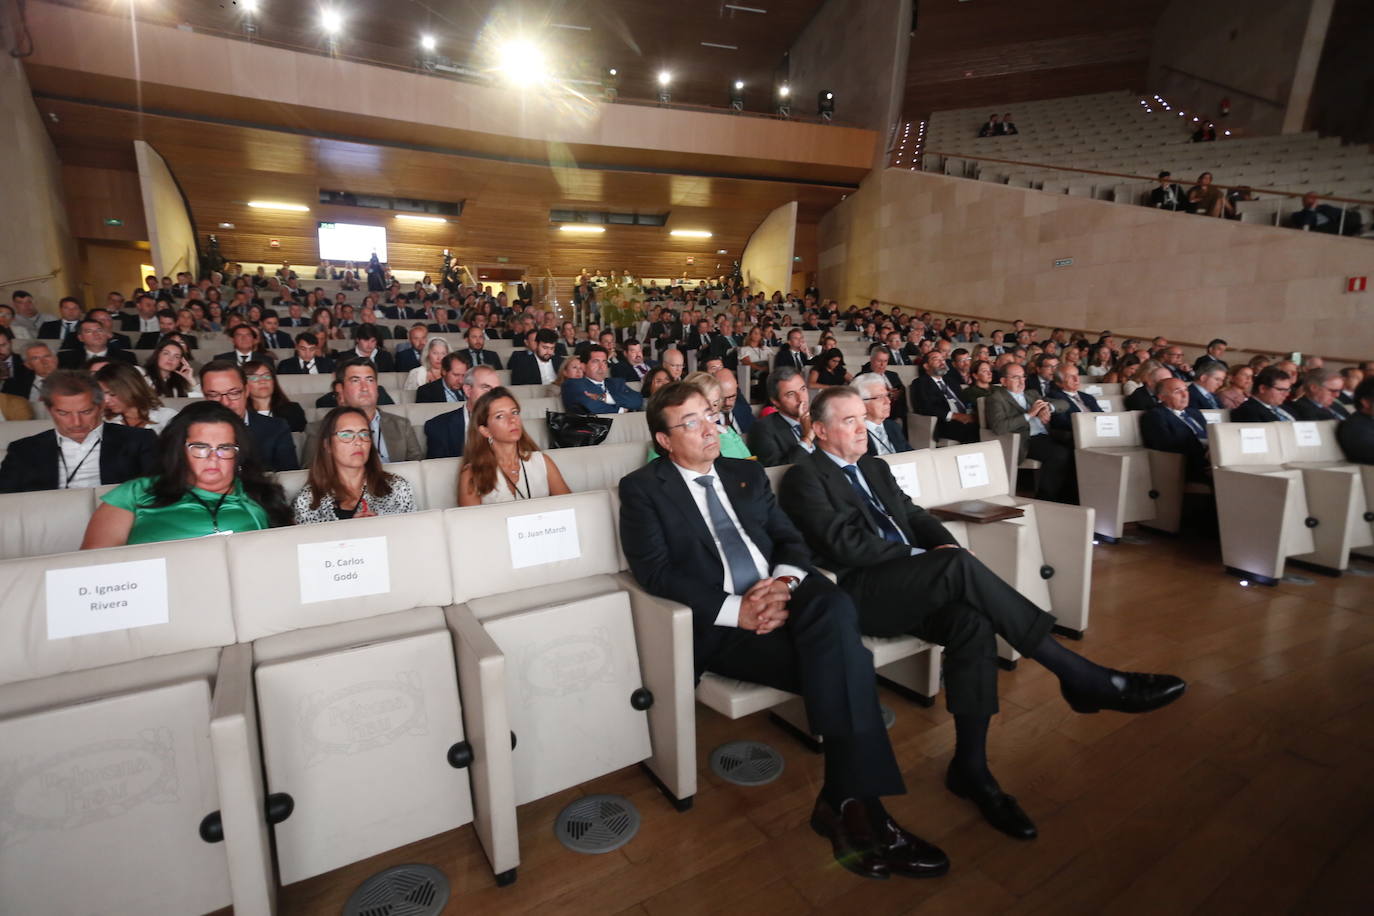 Fotos: Segunda jornada del Congreso de la Empresa Familiar en Cáceres